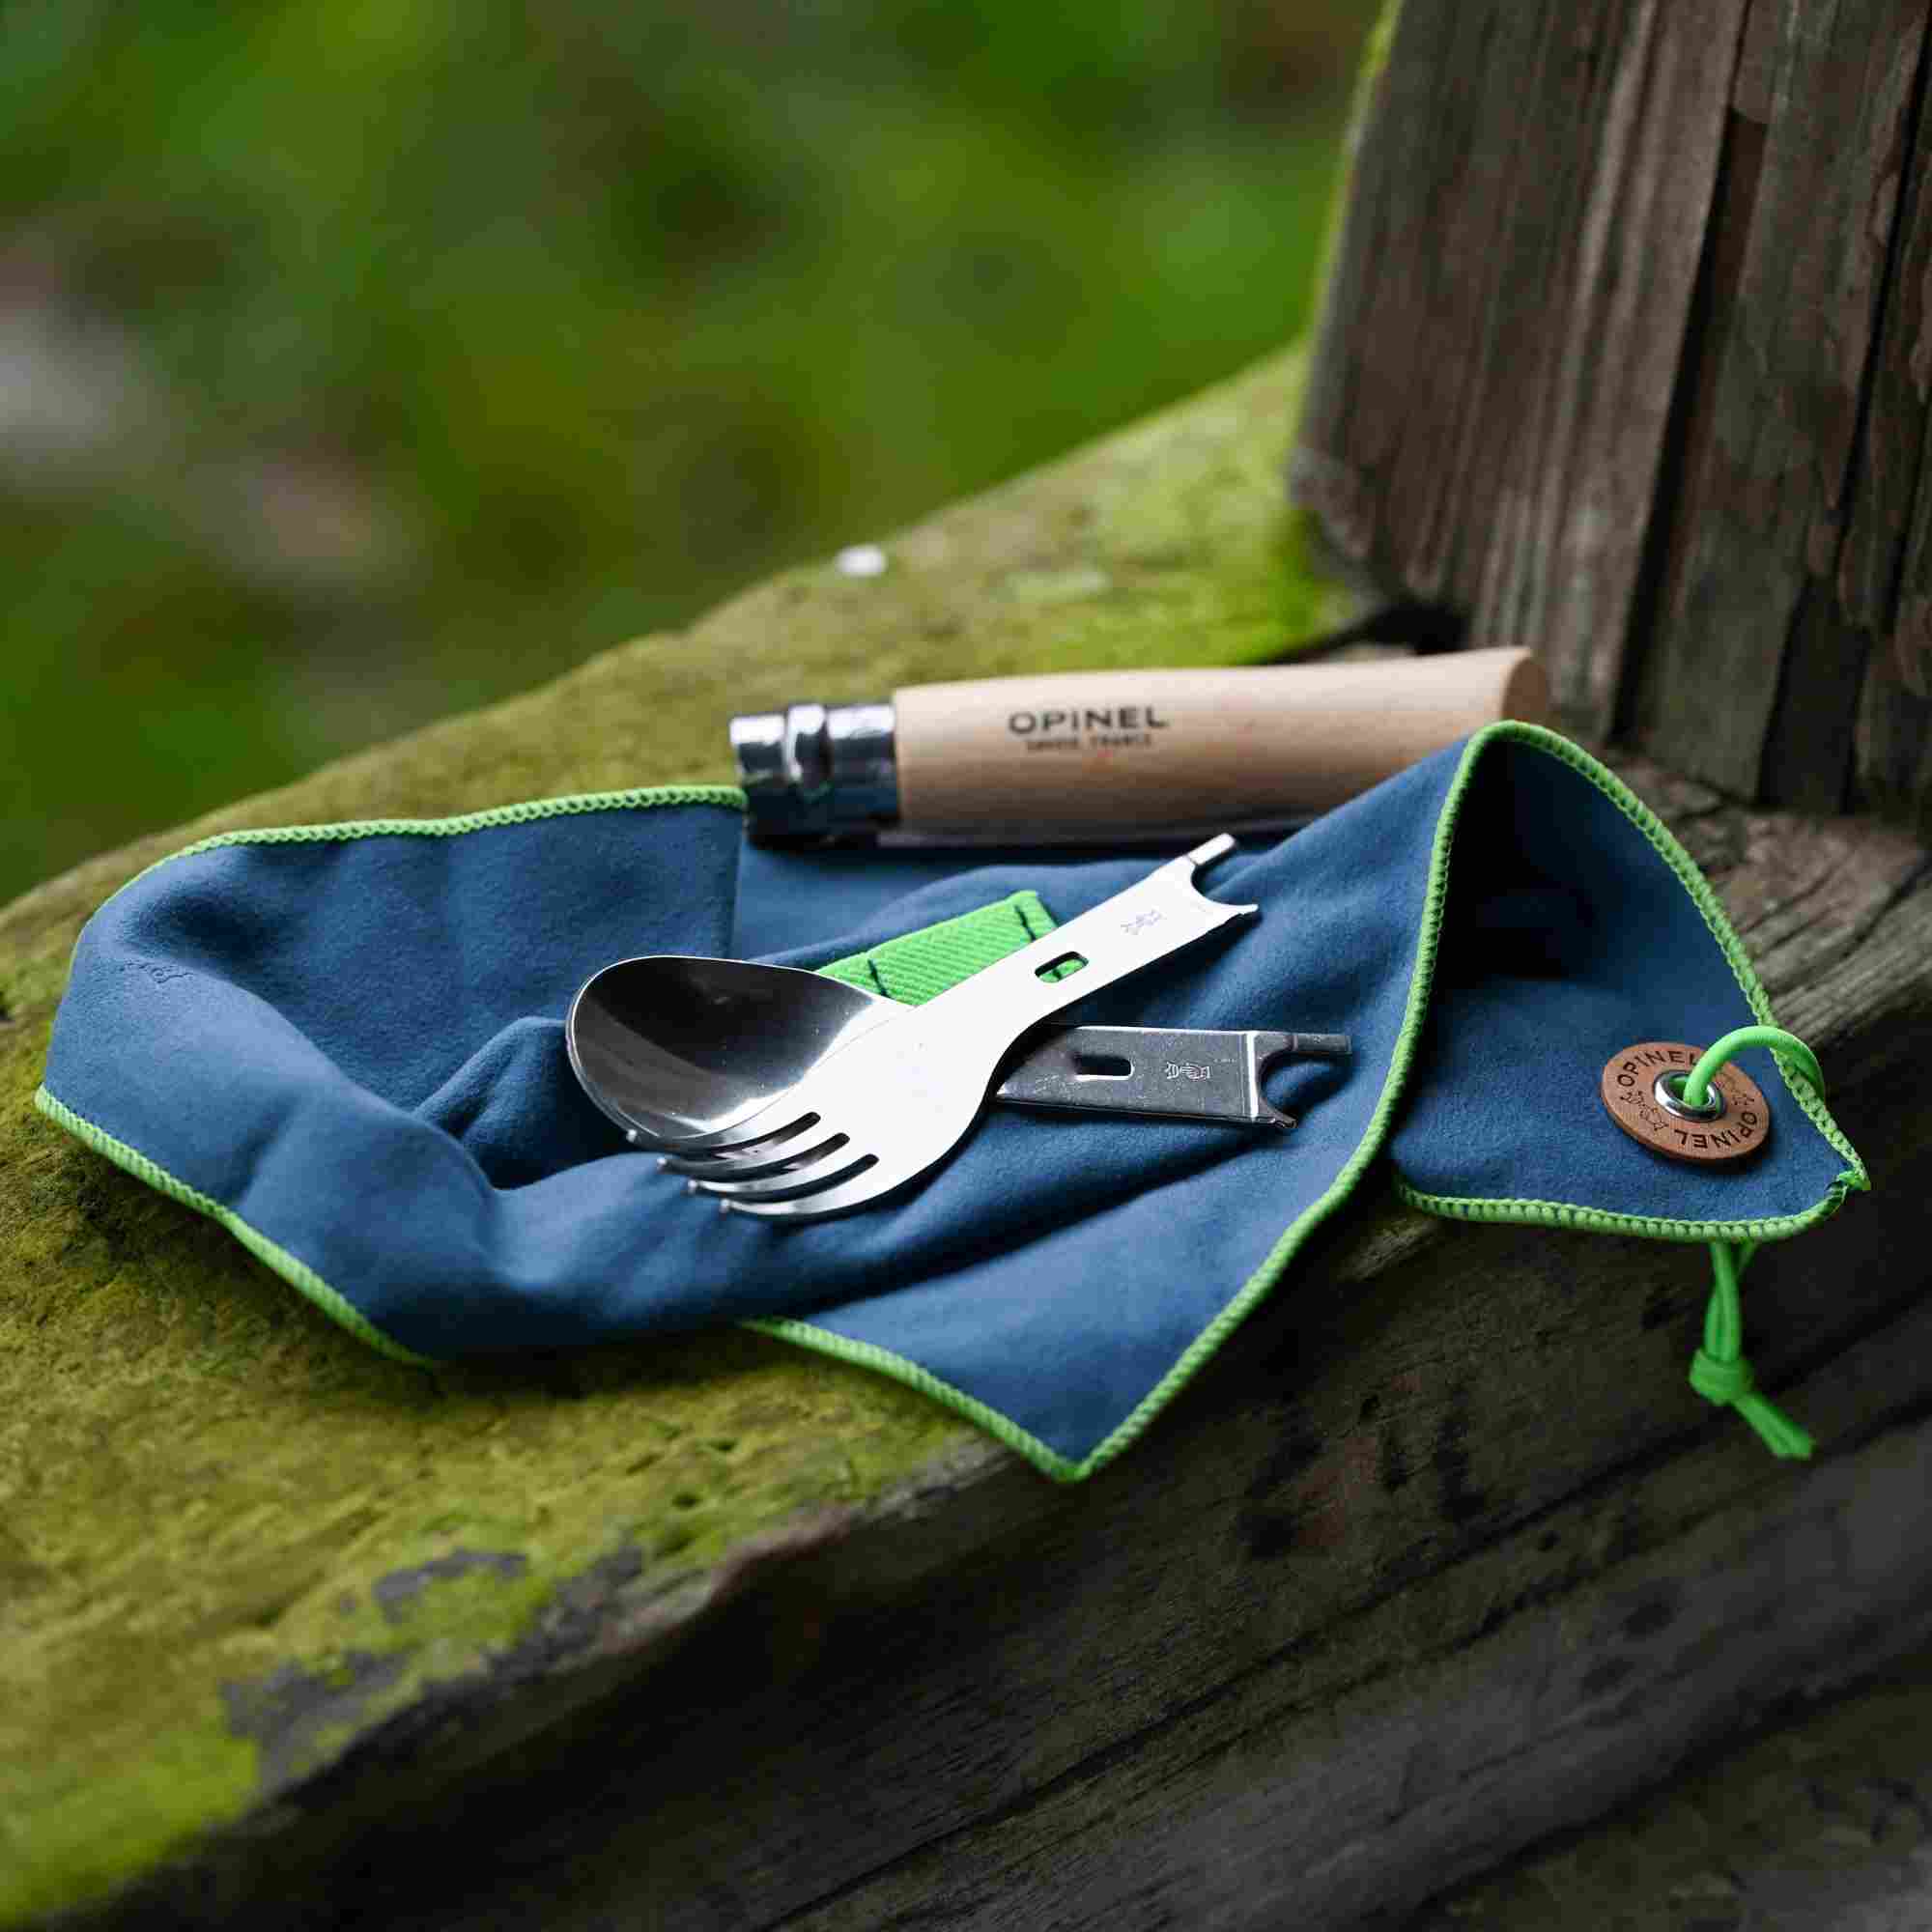 Campingbesteck von Opinel mit Gabel, Löffel und Messer in einem, vielseitig einsetzbar